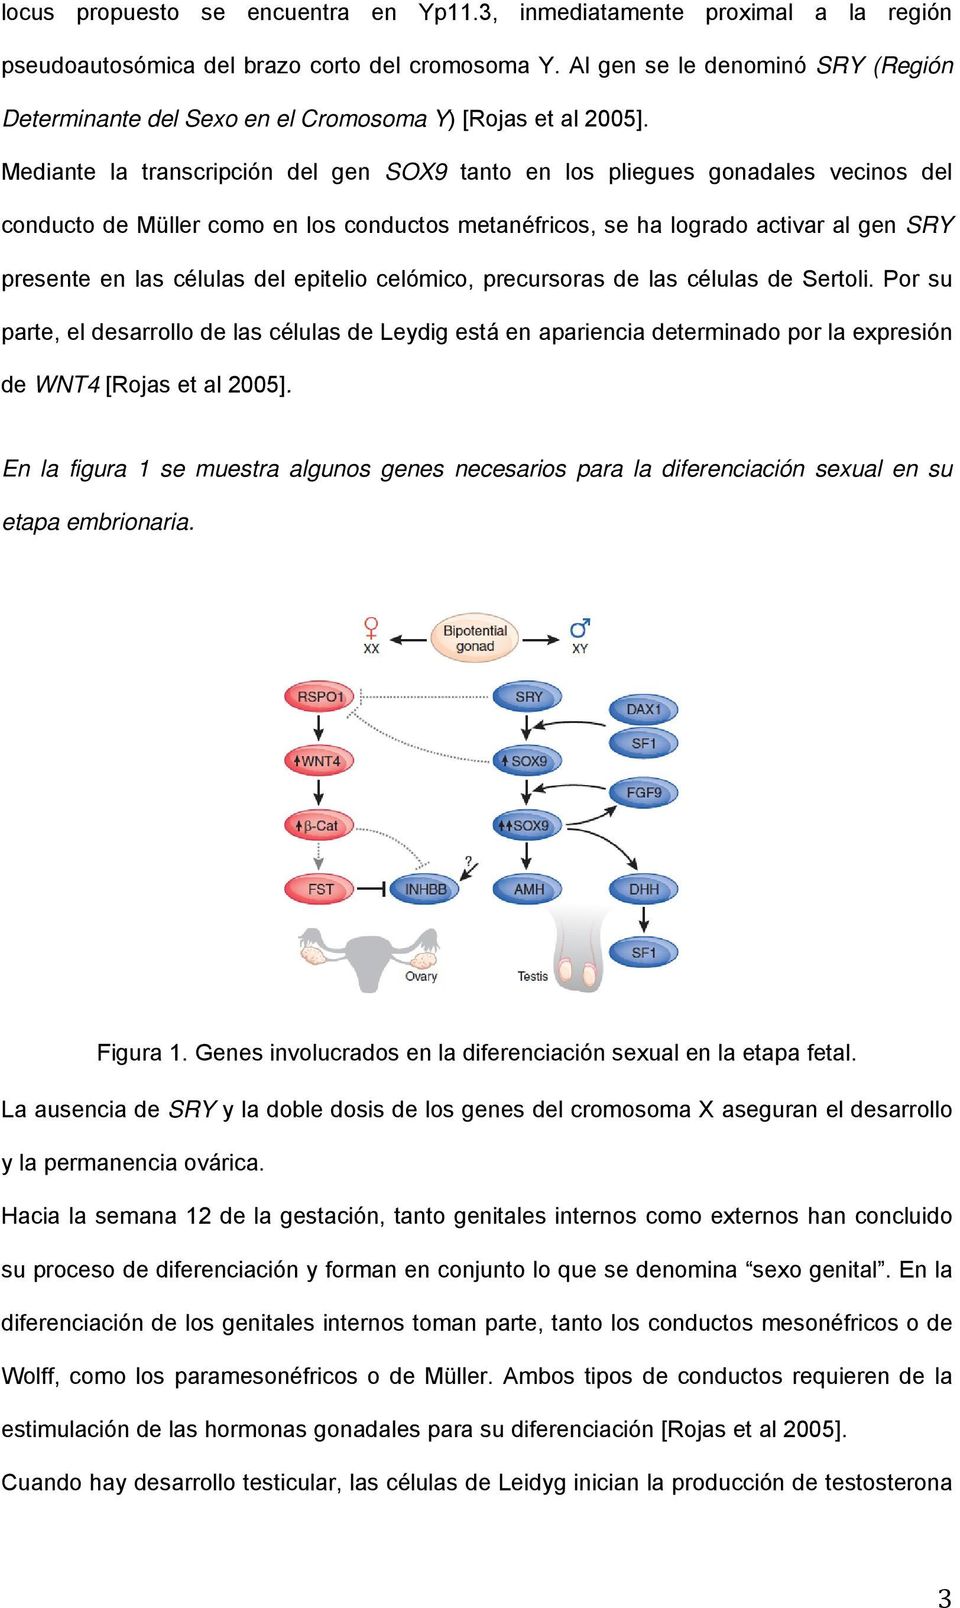 Mediante la transcripción del gen SOX9 tanto en los pliegues gonadales vecinos del conducto de Müller como en los conductos metanéfricos, se ha logrado activar al gen SRY presente en las células del